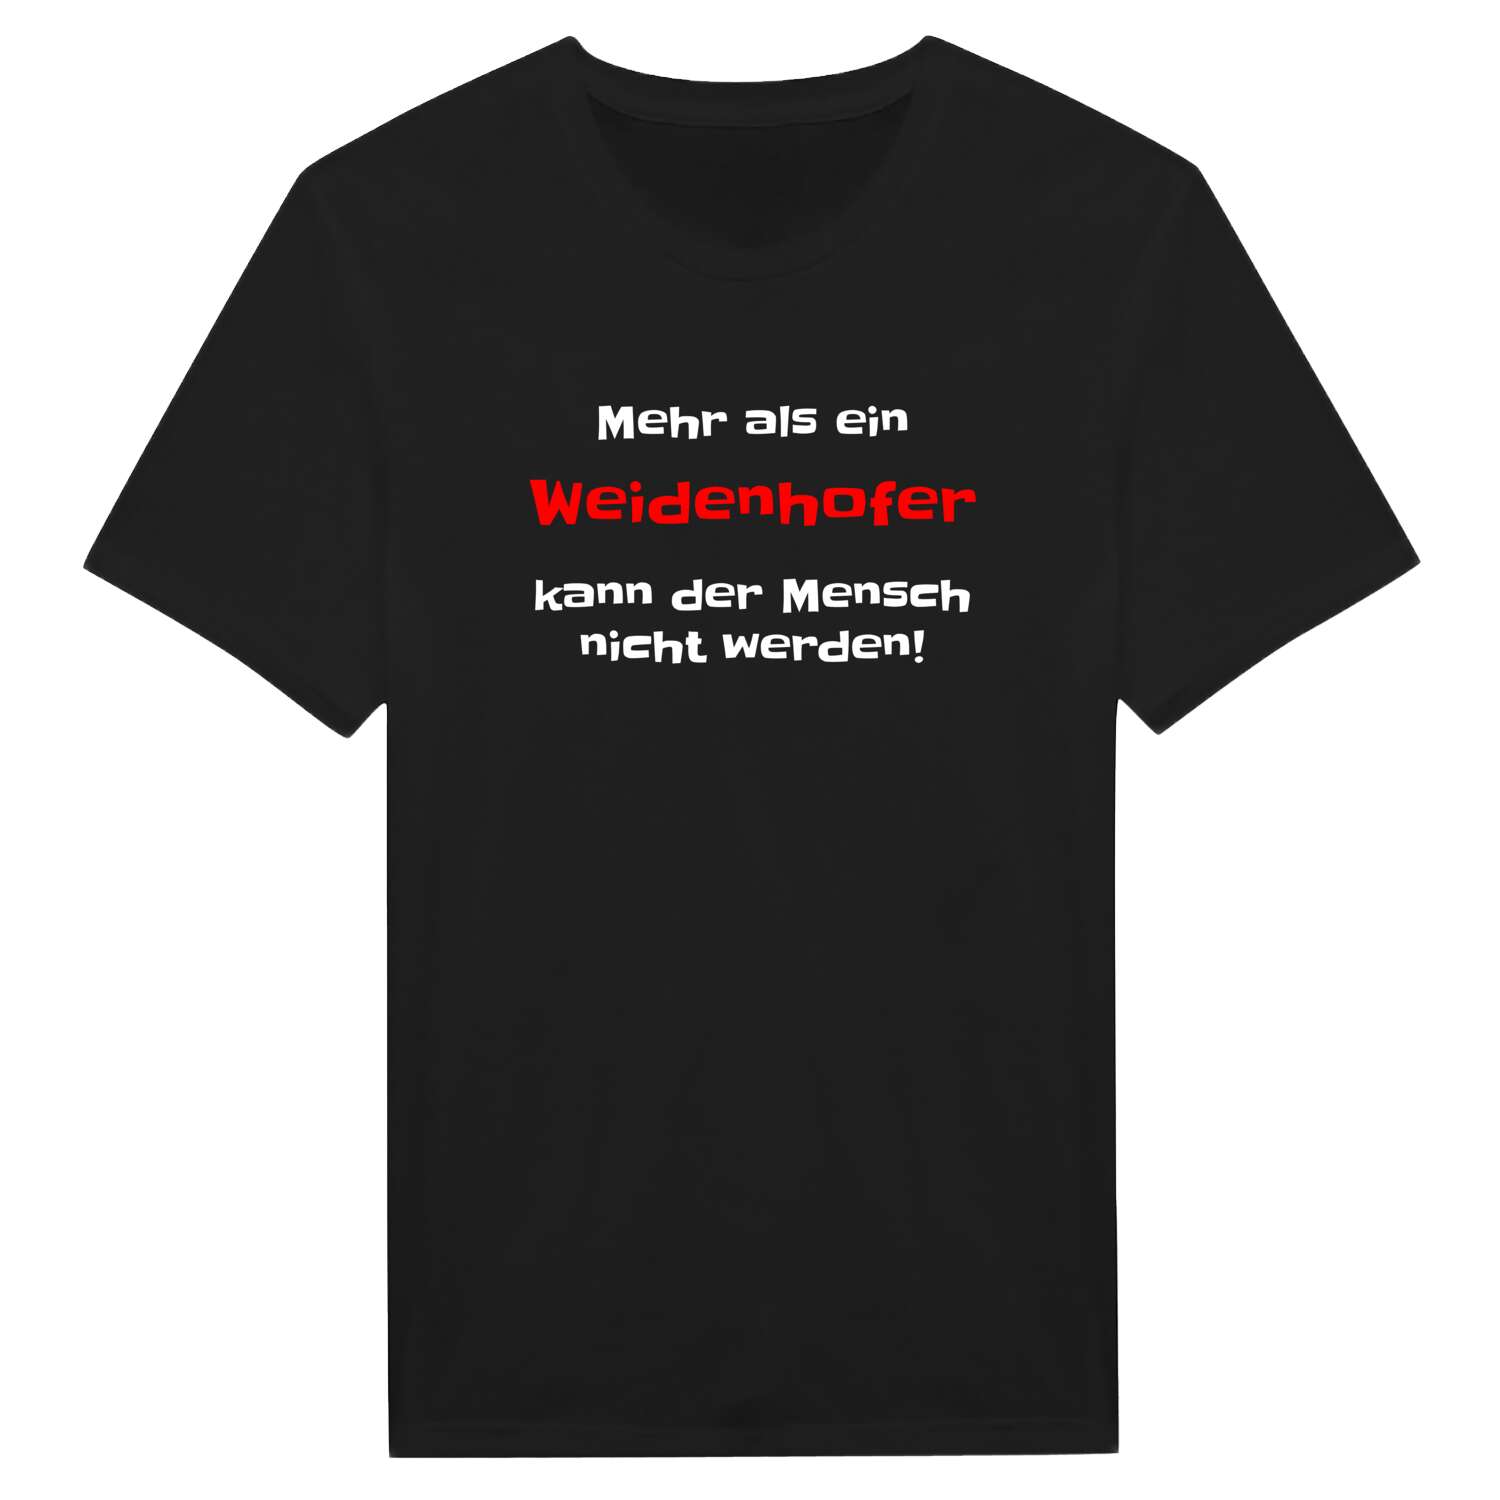 Weidenhof T-Shirt »Mehr als ein«